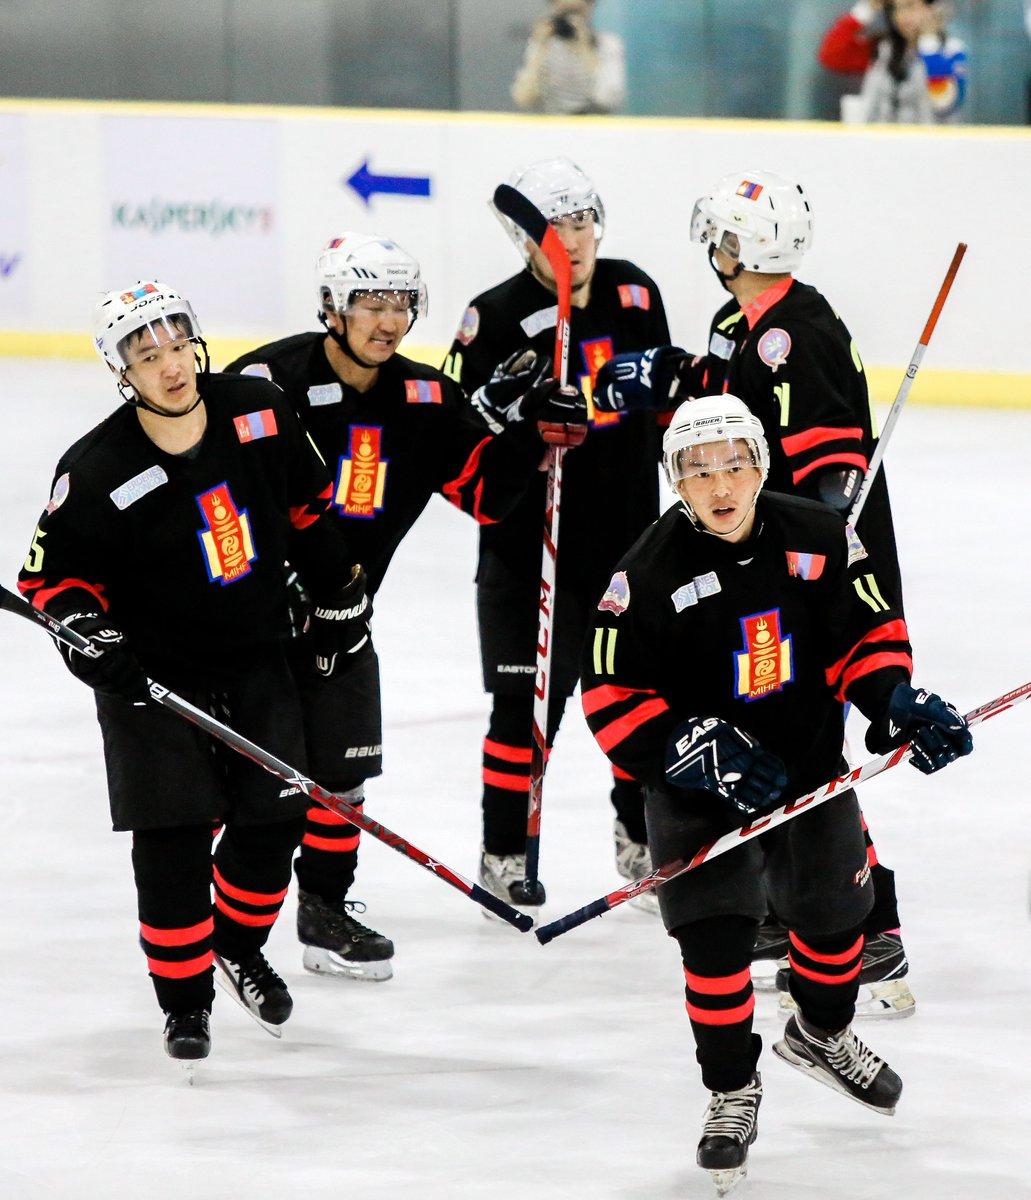 IIHF Challenge Cup of Asia тэмцээнд оролцож буй Монголын шигшээ баг